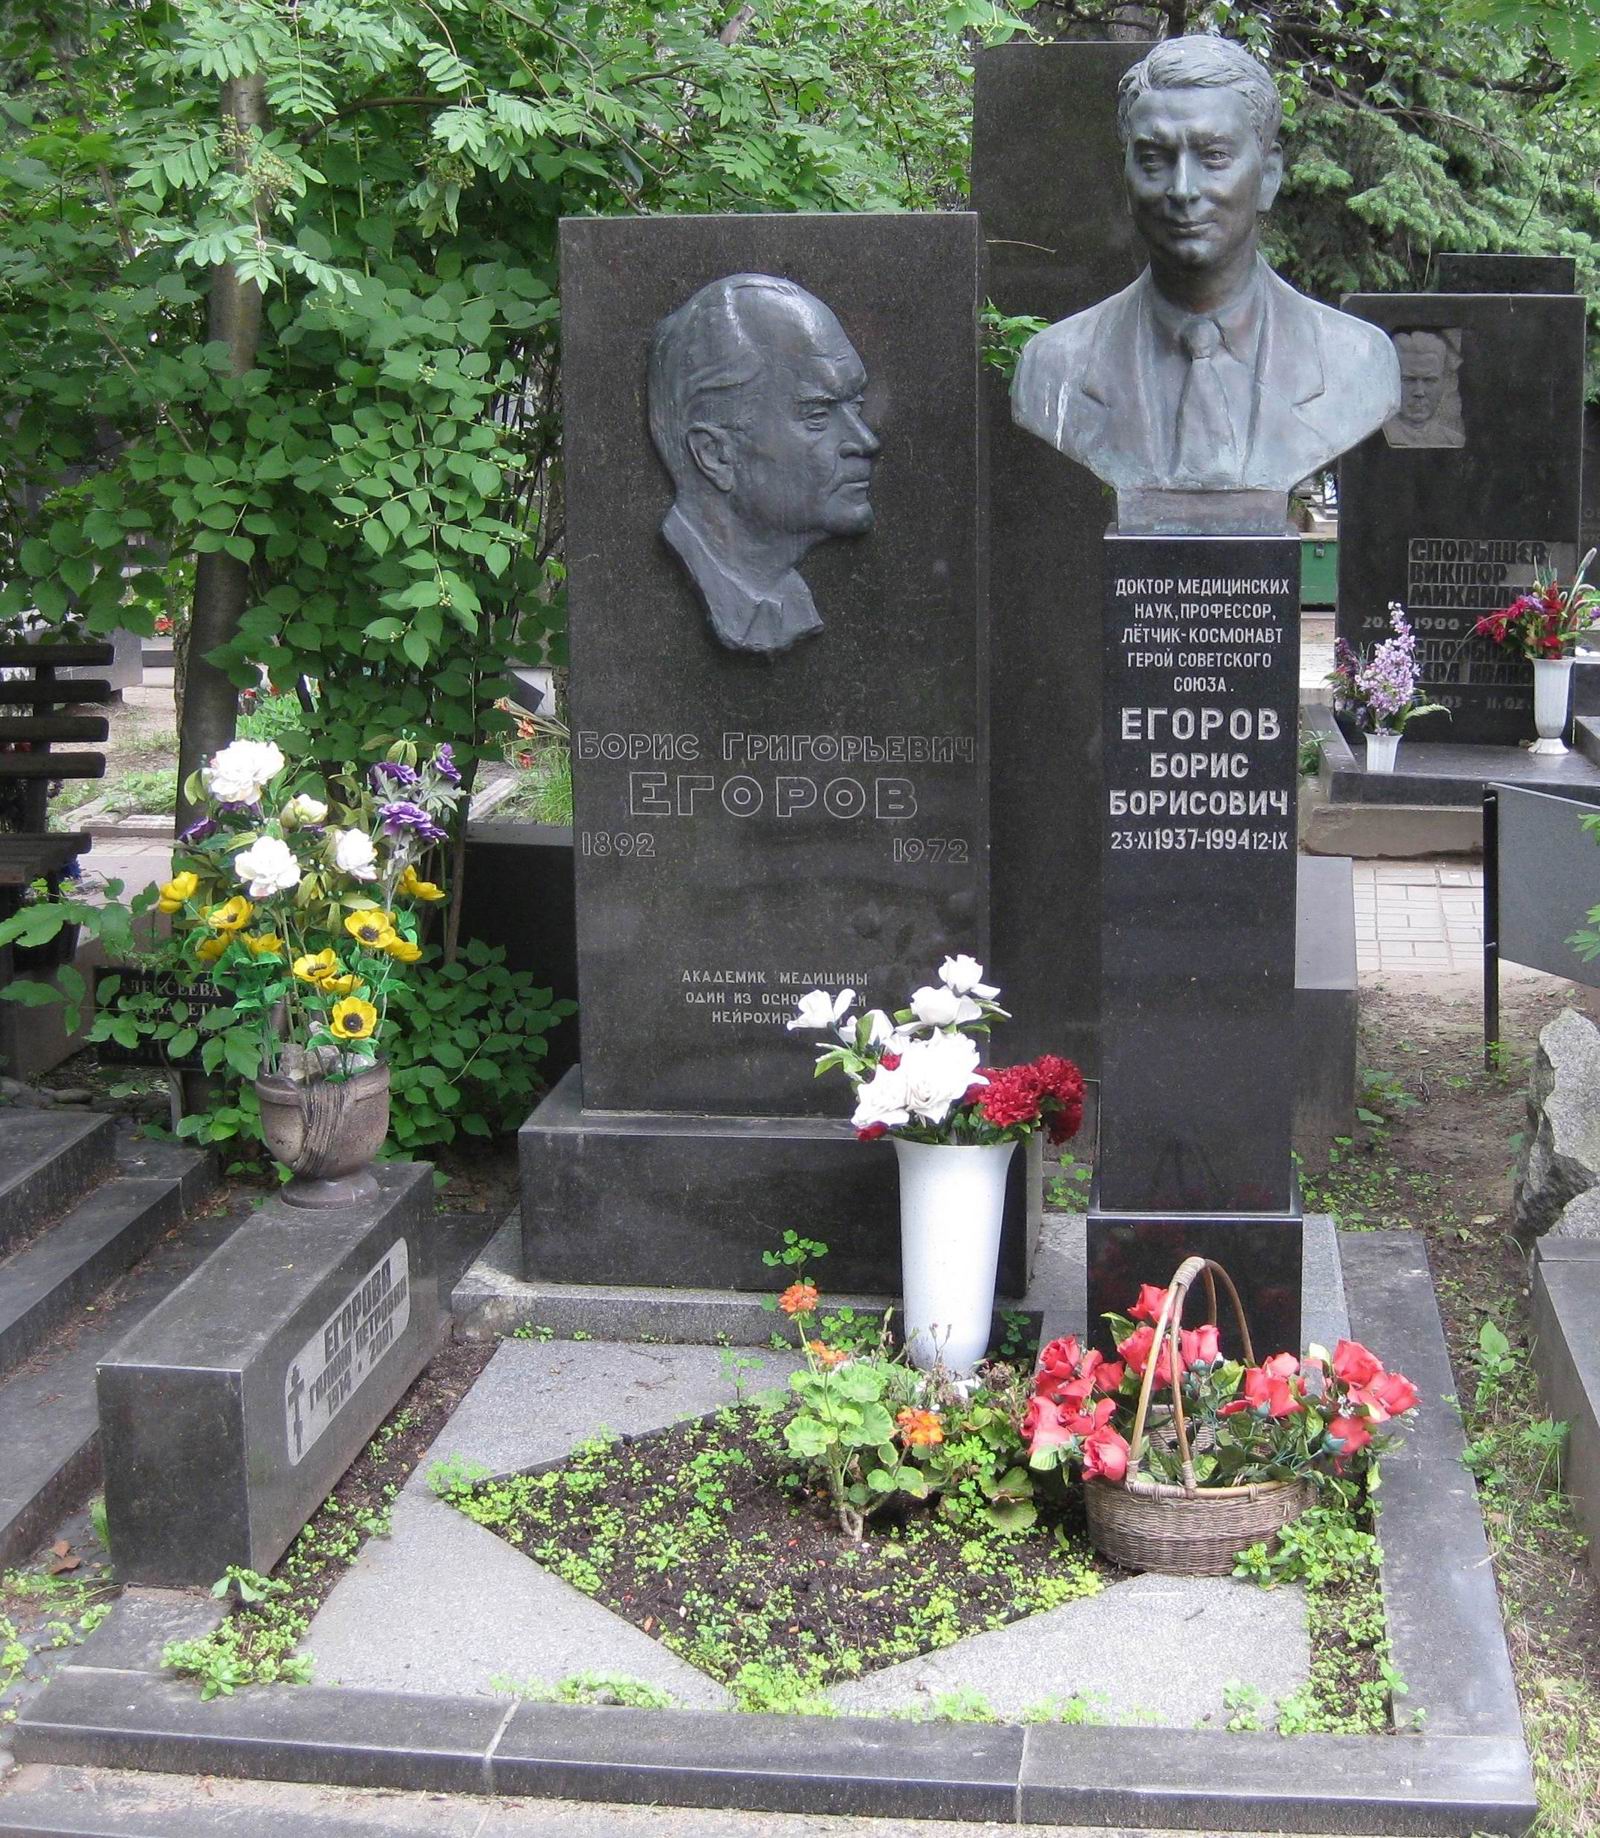 Памятник на могиле Егорова Б.Г. (1892-1972) и Егорова Б.Б. (1937-1994), ск. Ж.Канканян, на Новодевичьем кладбище (7-16-9).